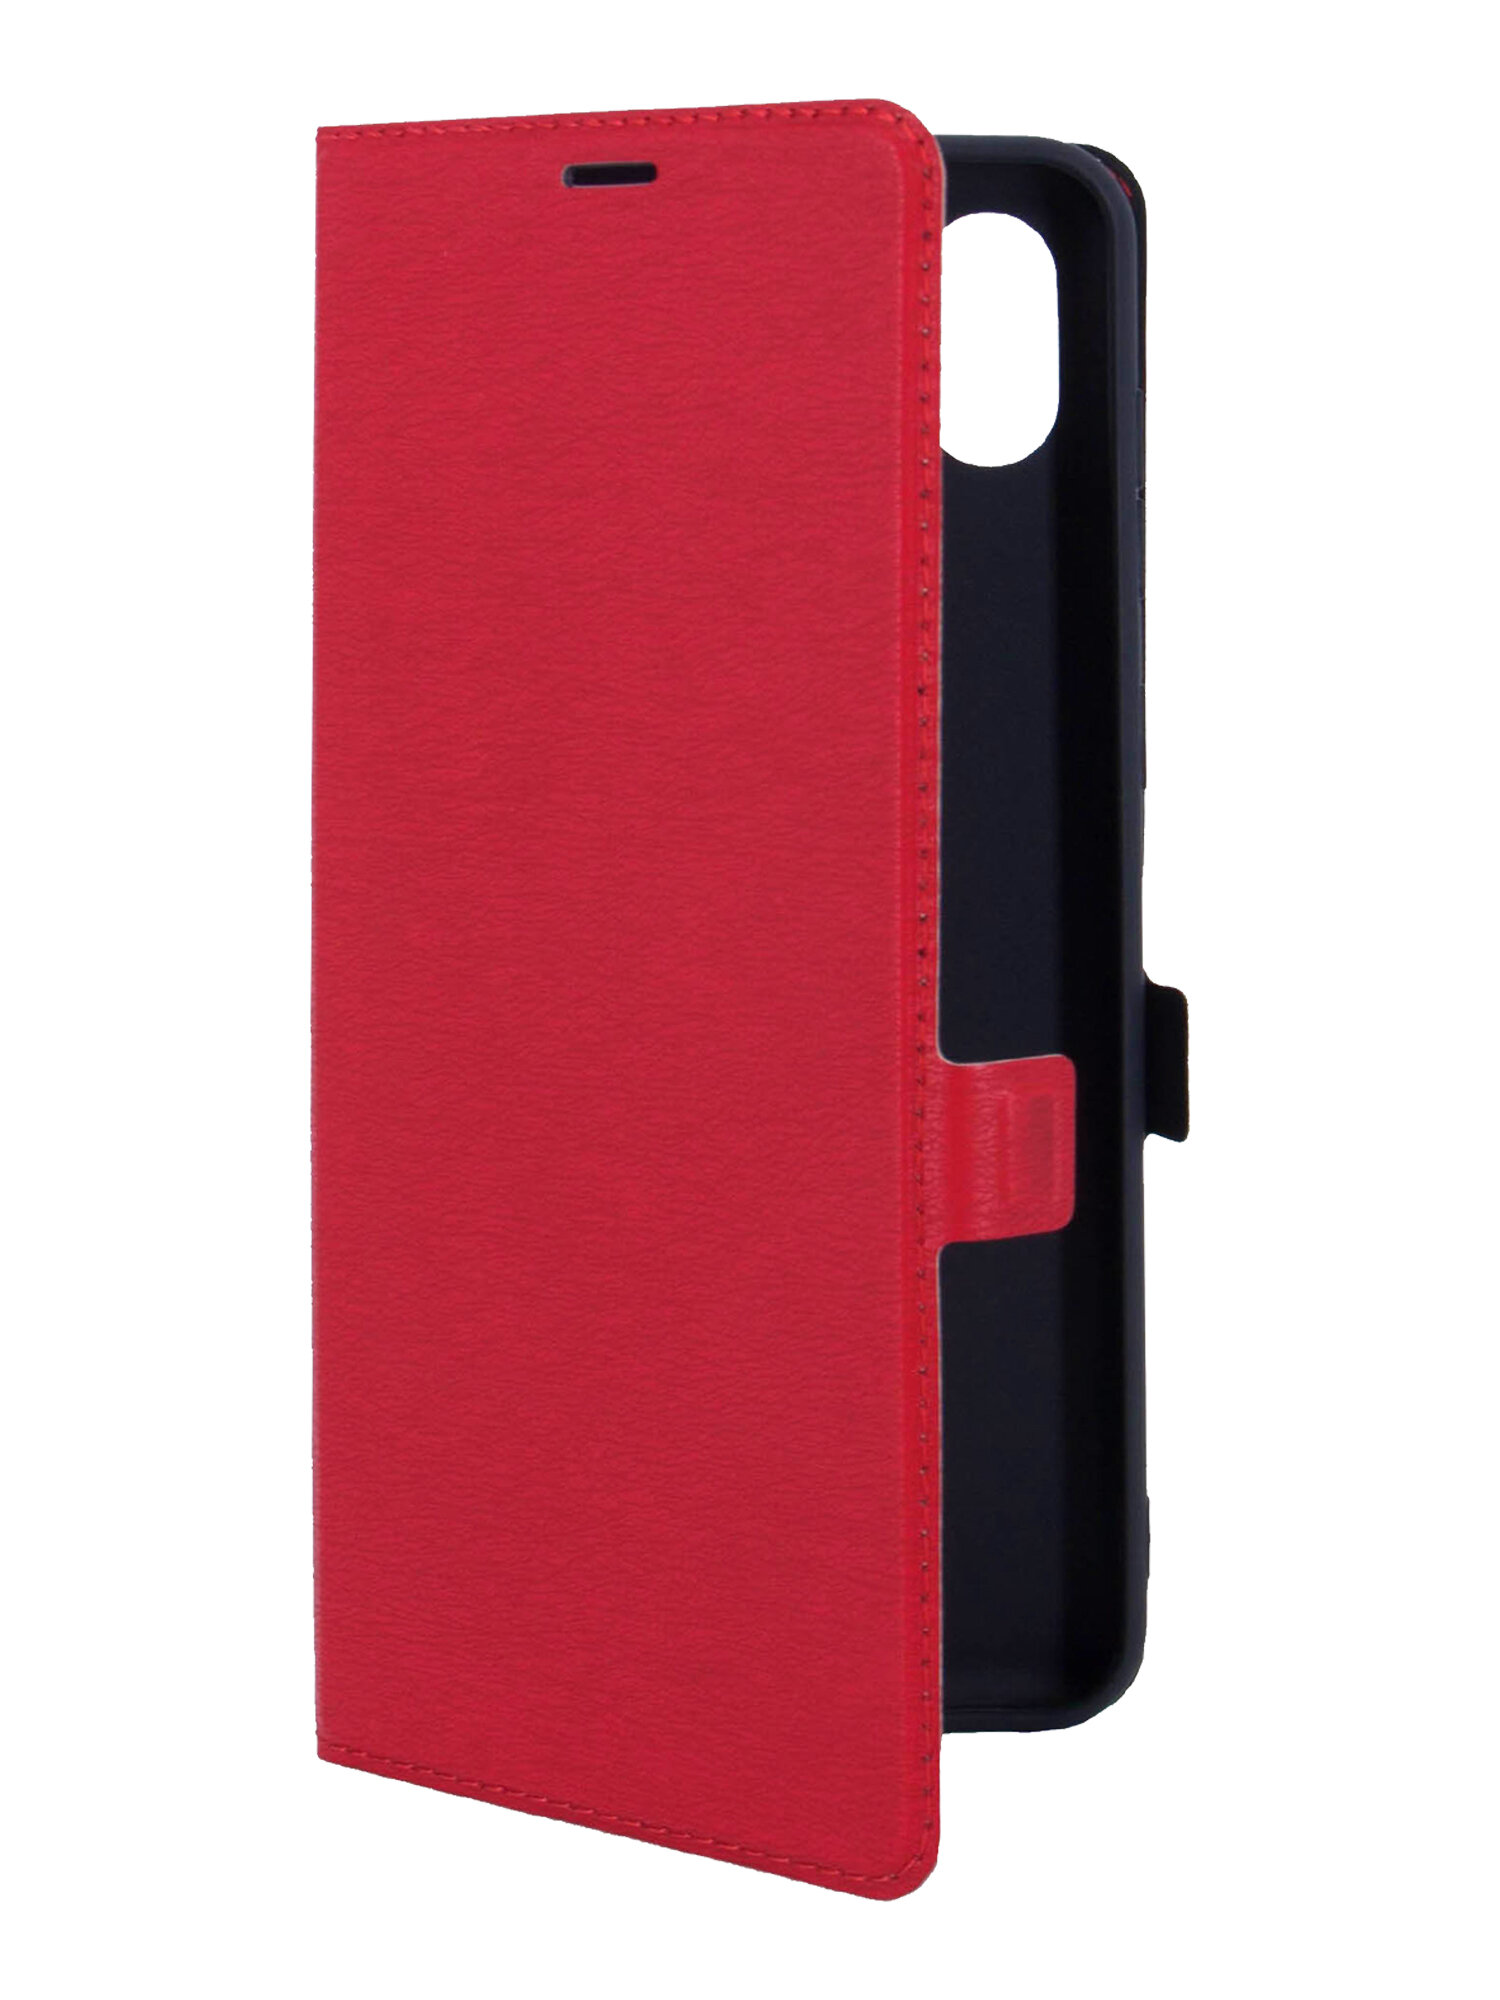 Чехол на Samsung Galaxy A04 (Самсунг А04) красный книжка эко-кожа с функцией подставки отделением для пластиковых карт и магнитами Book case, Miuko